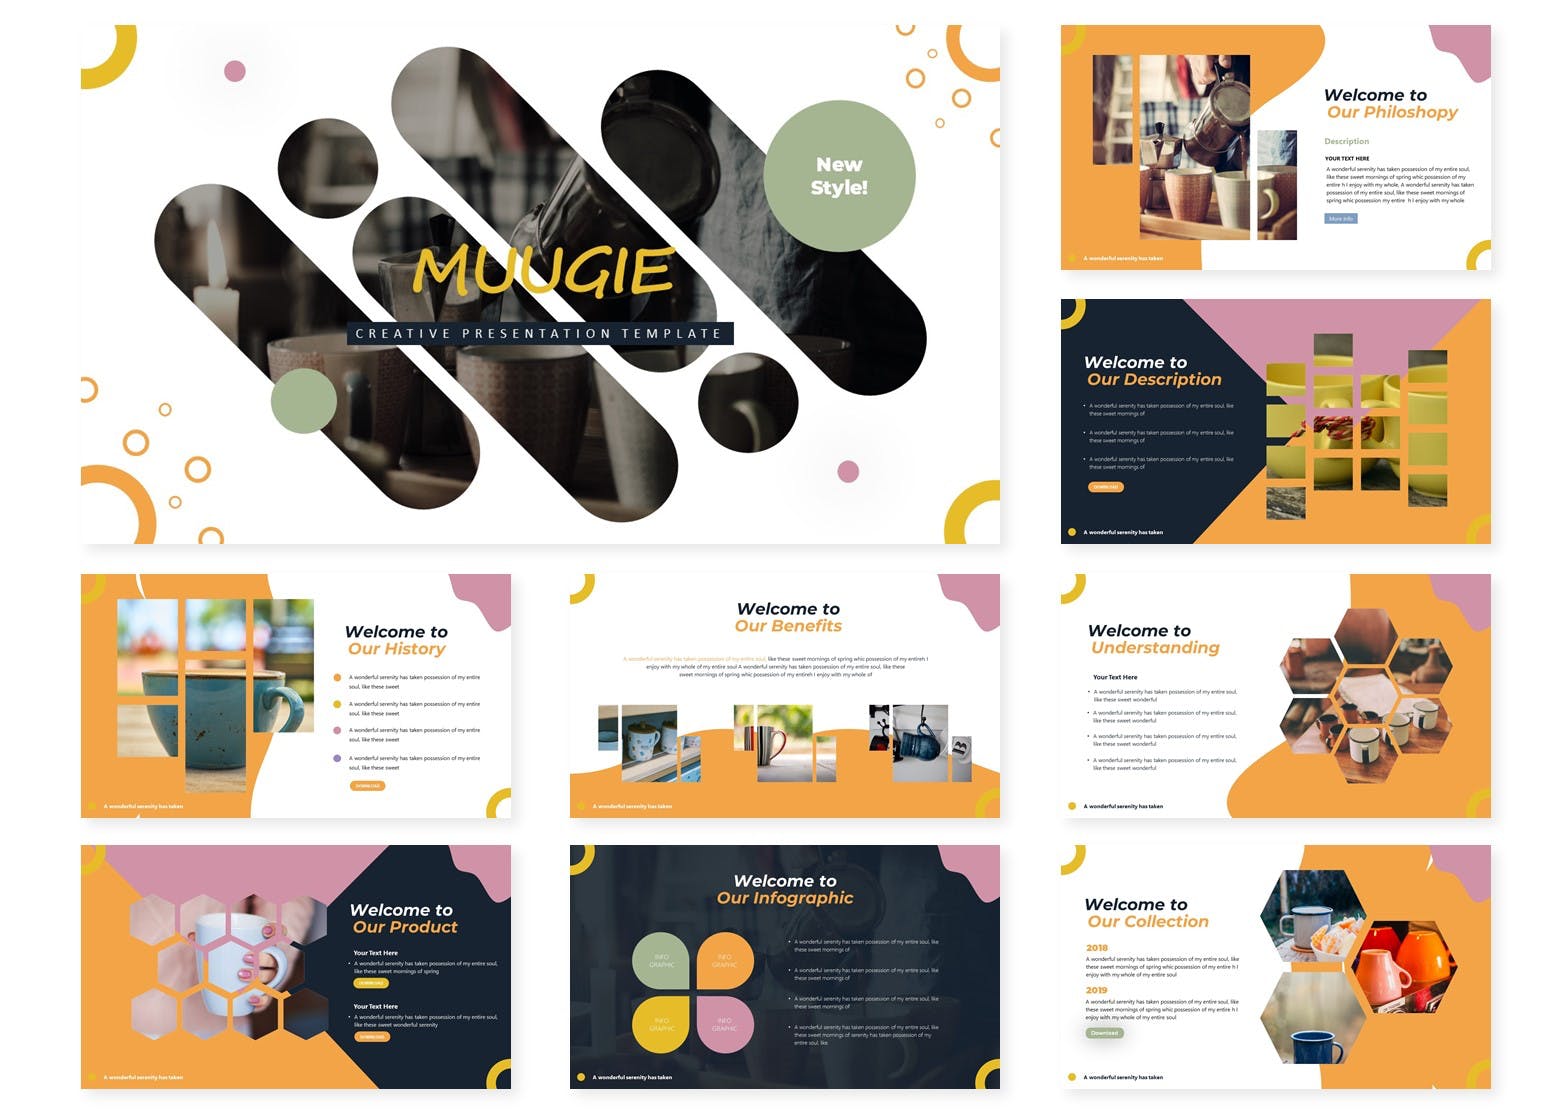 咖啡/咖啡厅品牌宣传&咖啡培训课程PPT幻灯片模板 Muugie | Powerpoint Template插图1